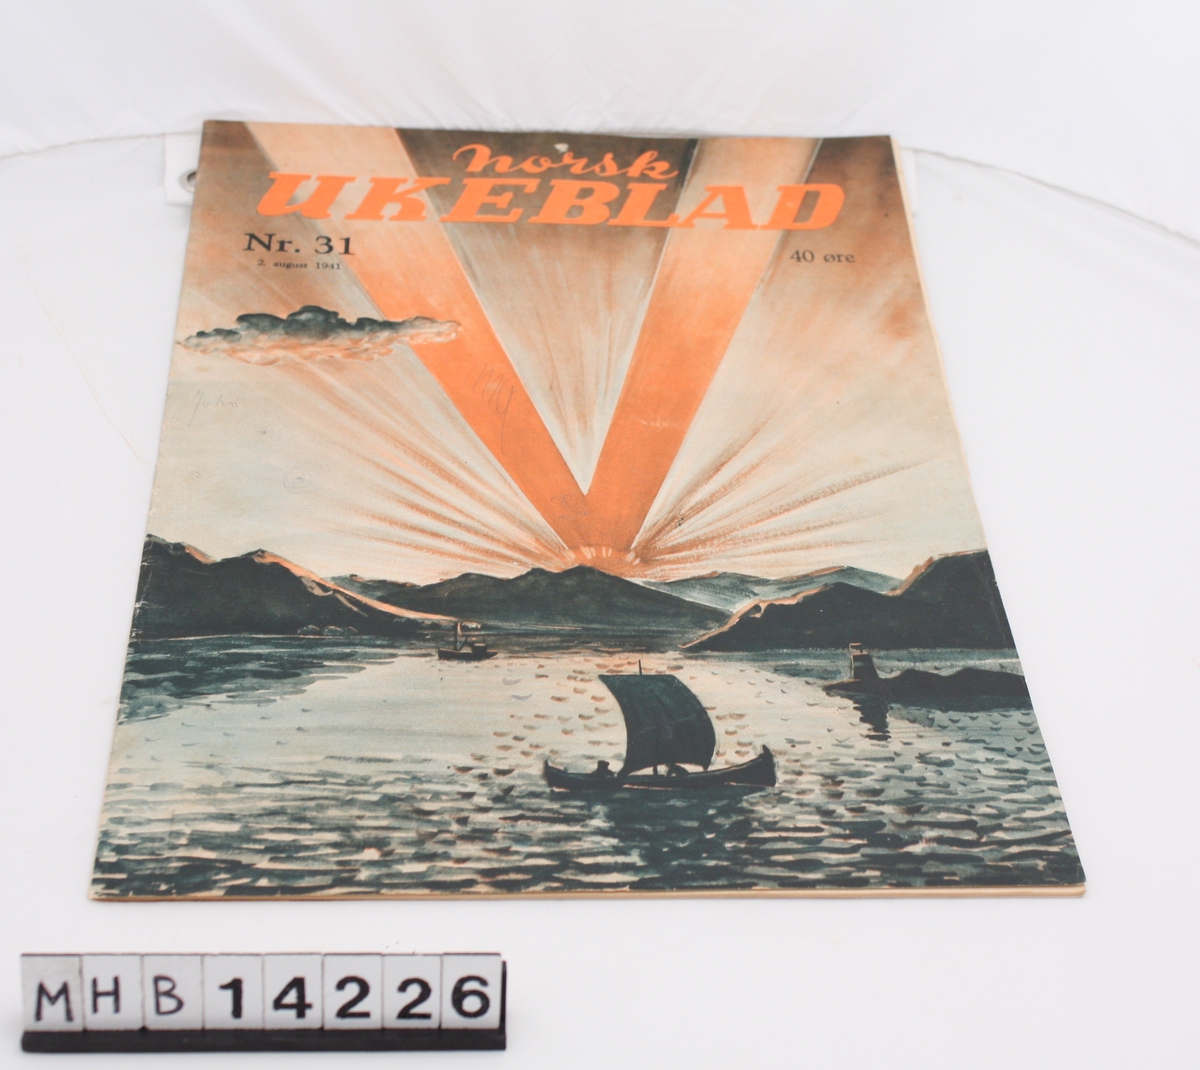 Magasin med rektangulær form som inneholder diverse artikler, reklame og tegneserier. På forsiden er to båter på en fjord med fjell i bakgrunnen. Det er solnedgang, og strålene fra sola danner en V. Dette er Norsk Ukeblad nr. 31.